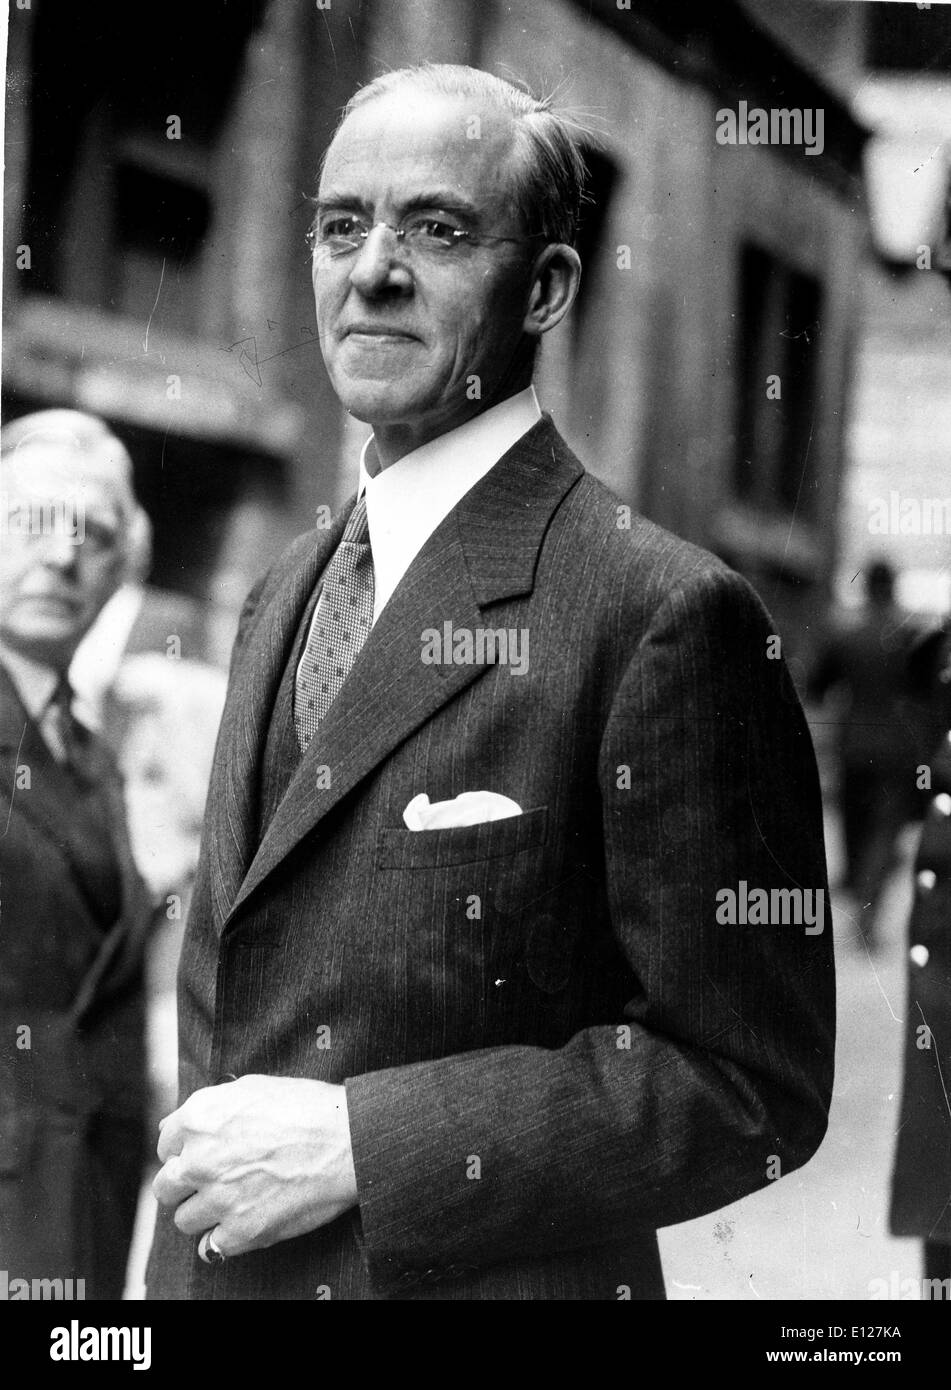 Apr 01, 2009 - Londres, Angleterre, Royaume-Uni - Stafford Cripps. Sir Richard Stafford Cripps (24 avril 1889 - 21 avril 1952) était un homme politique et Chancelier de l'Échiquier à partir de novembre 1947 à octobre 1950. (Crédit Image : KEYSTONE/ZUMAPRESS.com) Photos USA Banque D'Images